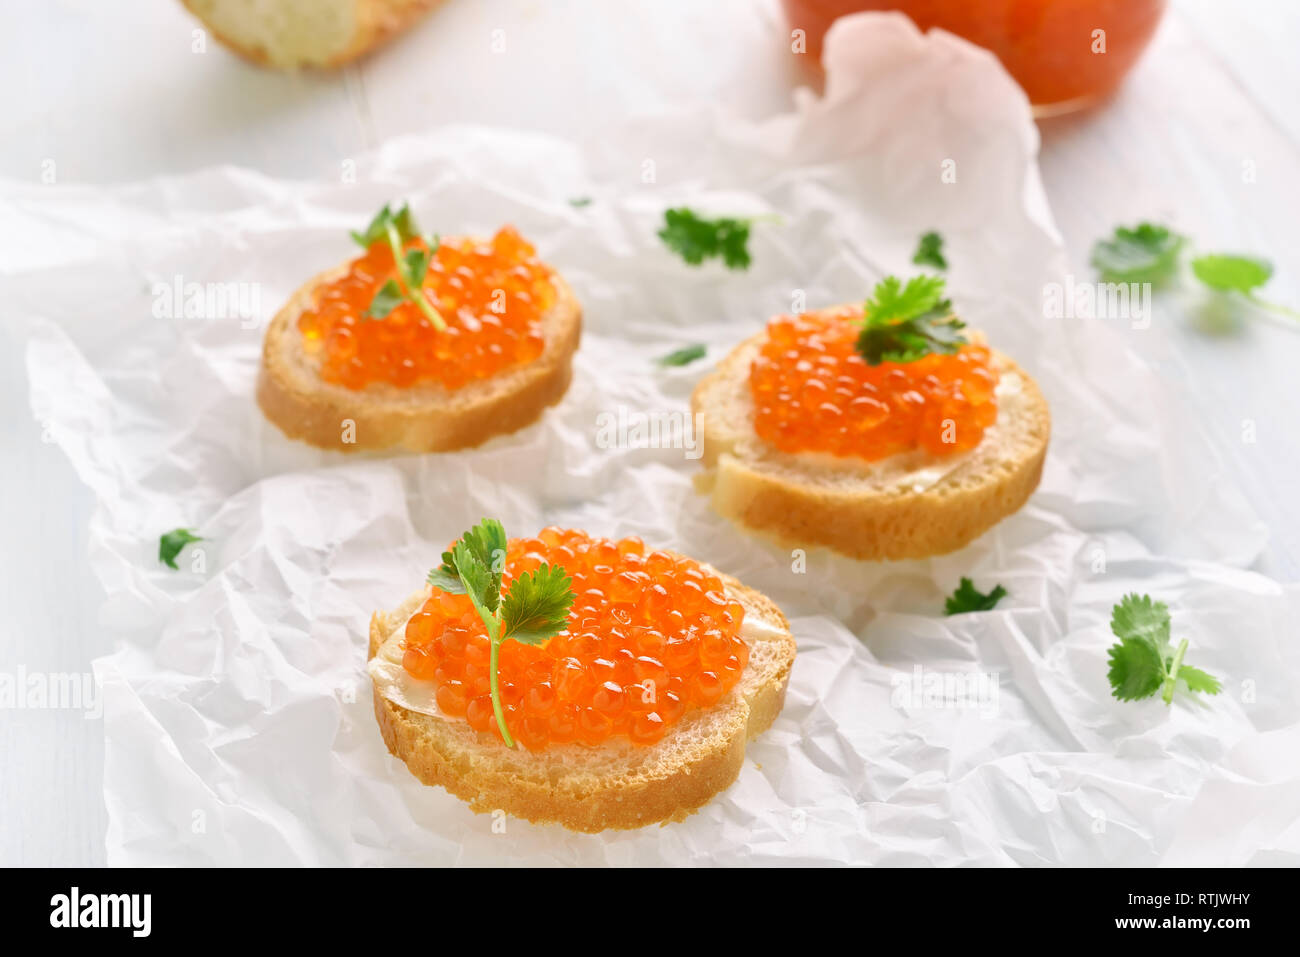 Les sandwiches ouverts avec du caviar rouge. De savoureux en-cas délicieux Banque D'Images